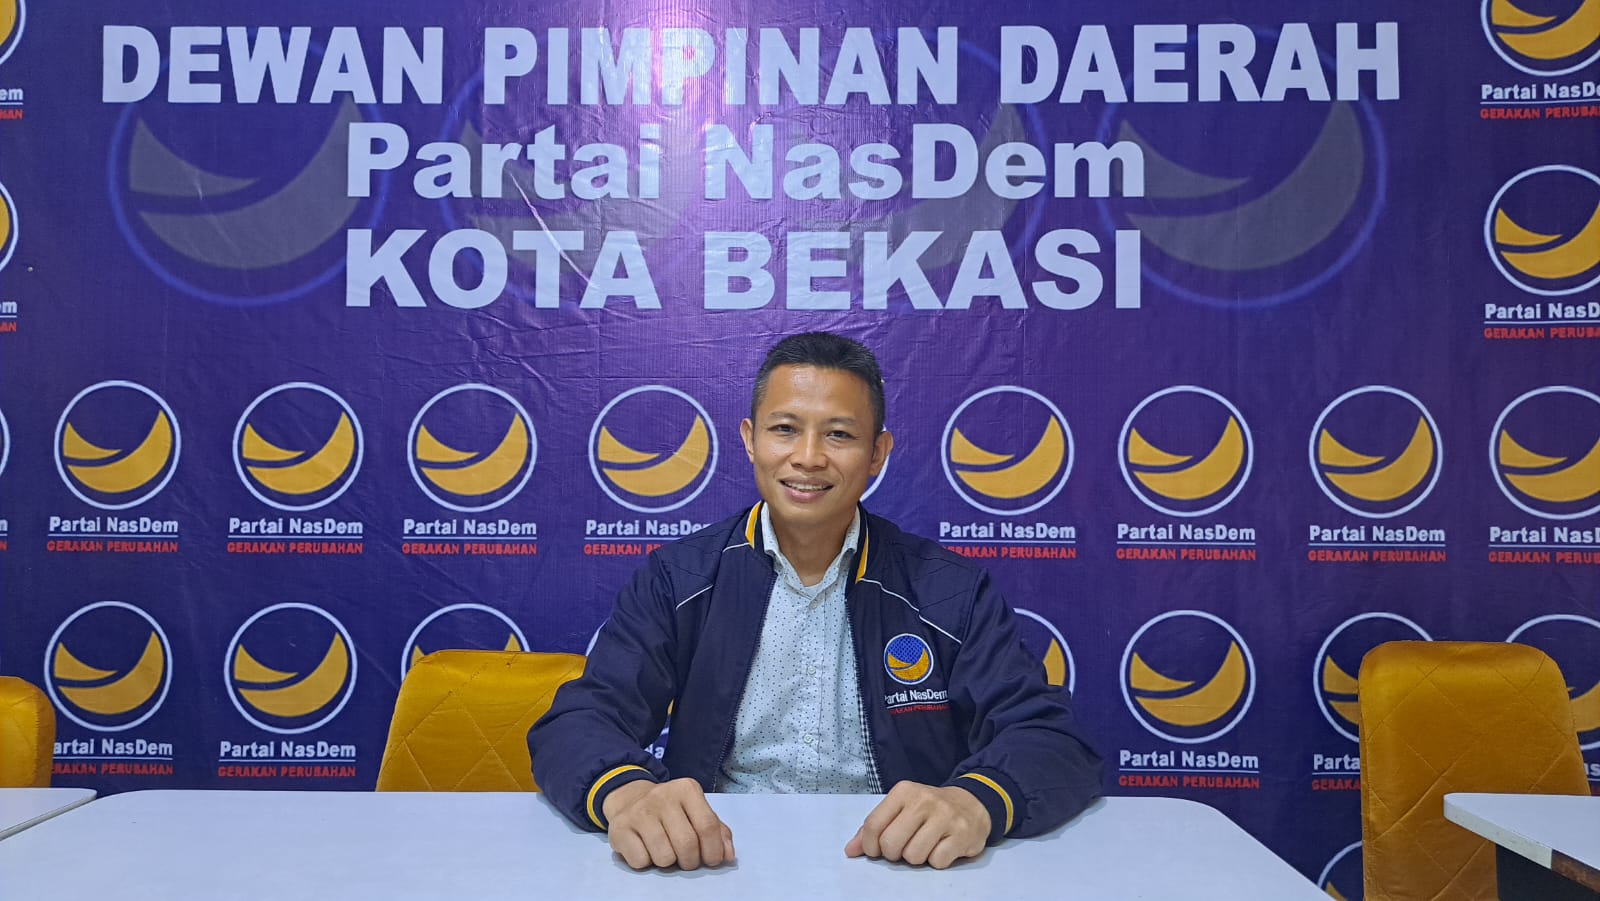 Polemik di Partai NasDem Kota Bekasi, Ketua: ada Upaya Gembosi Partai